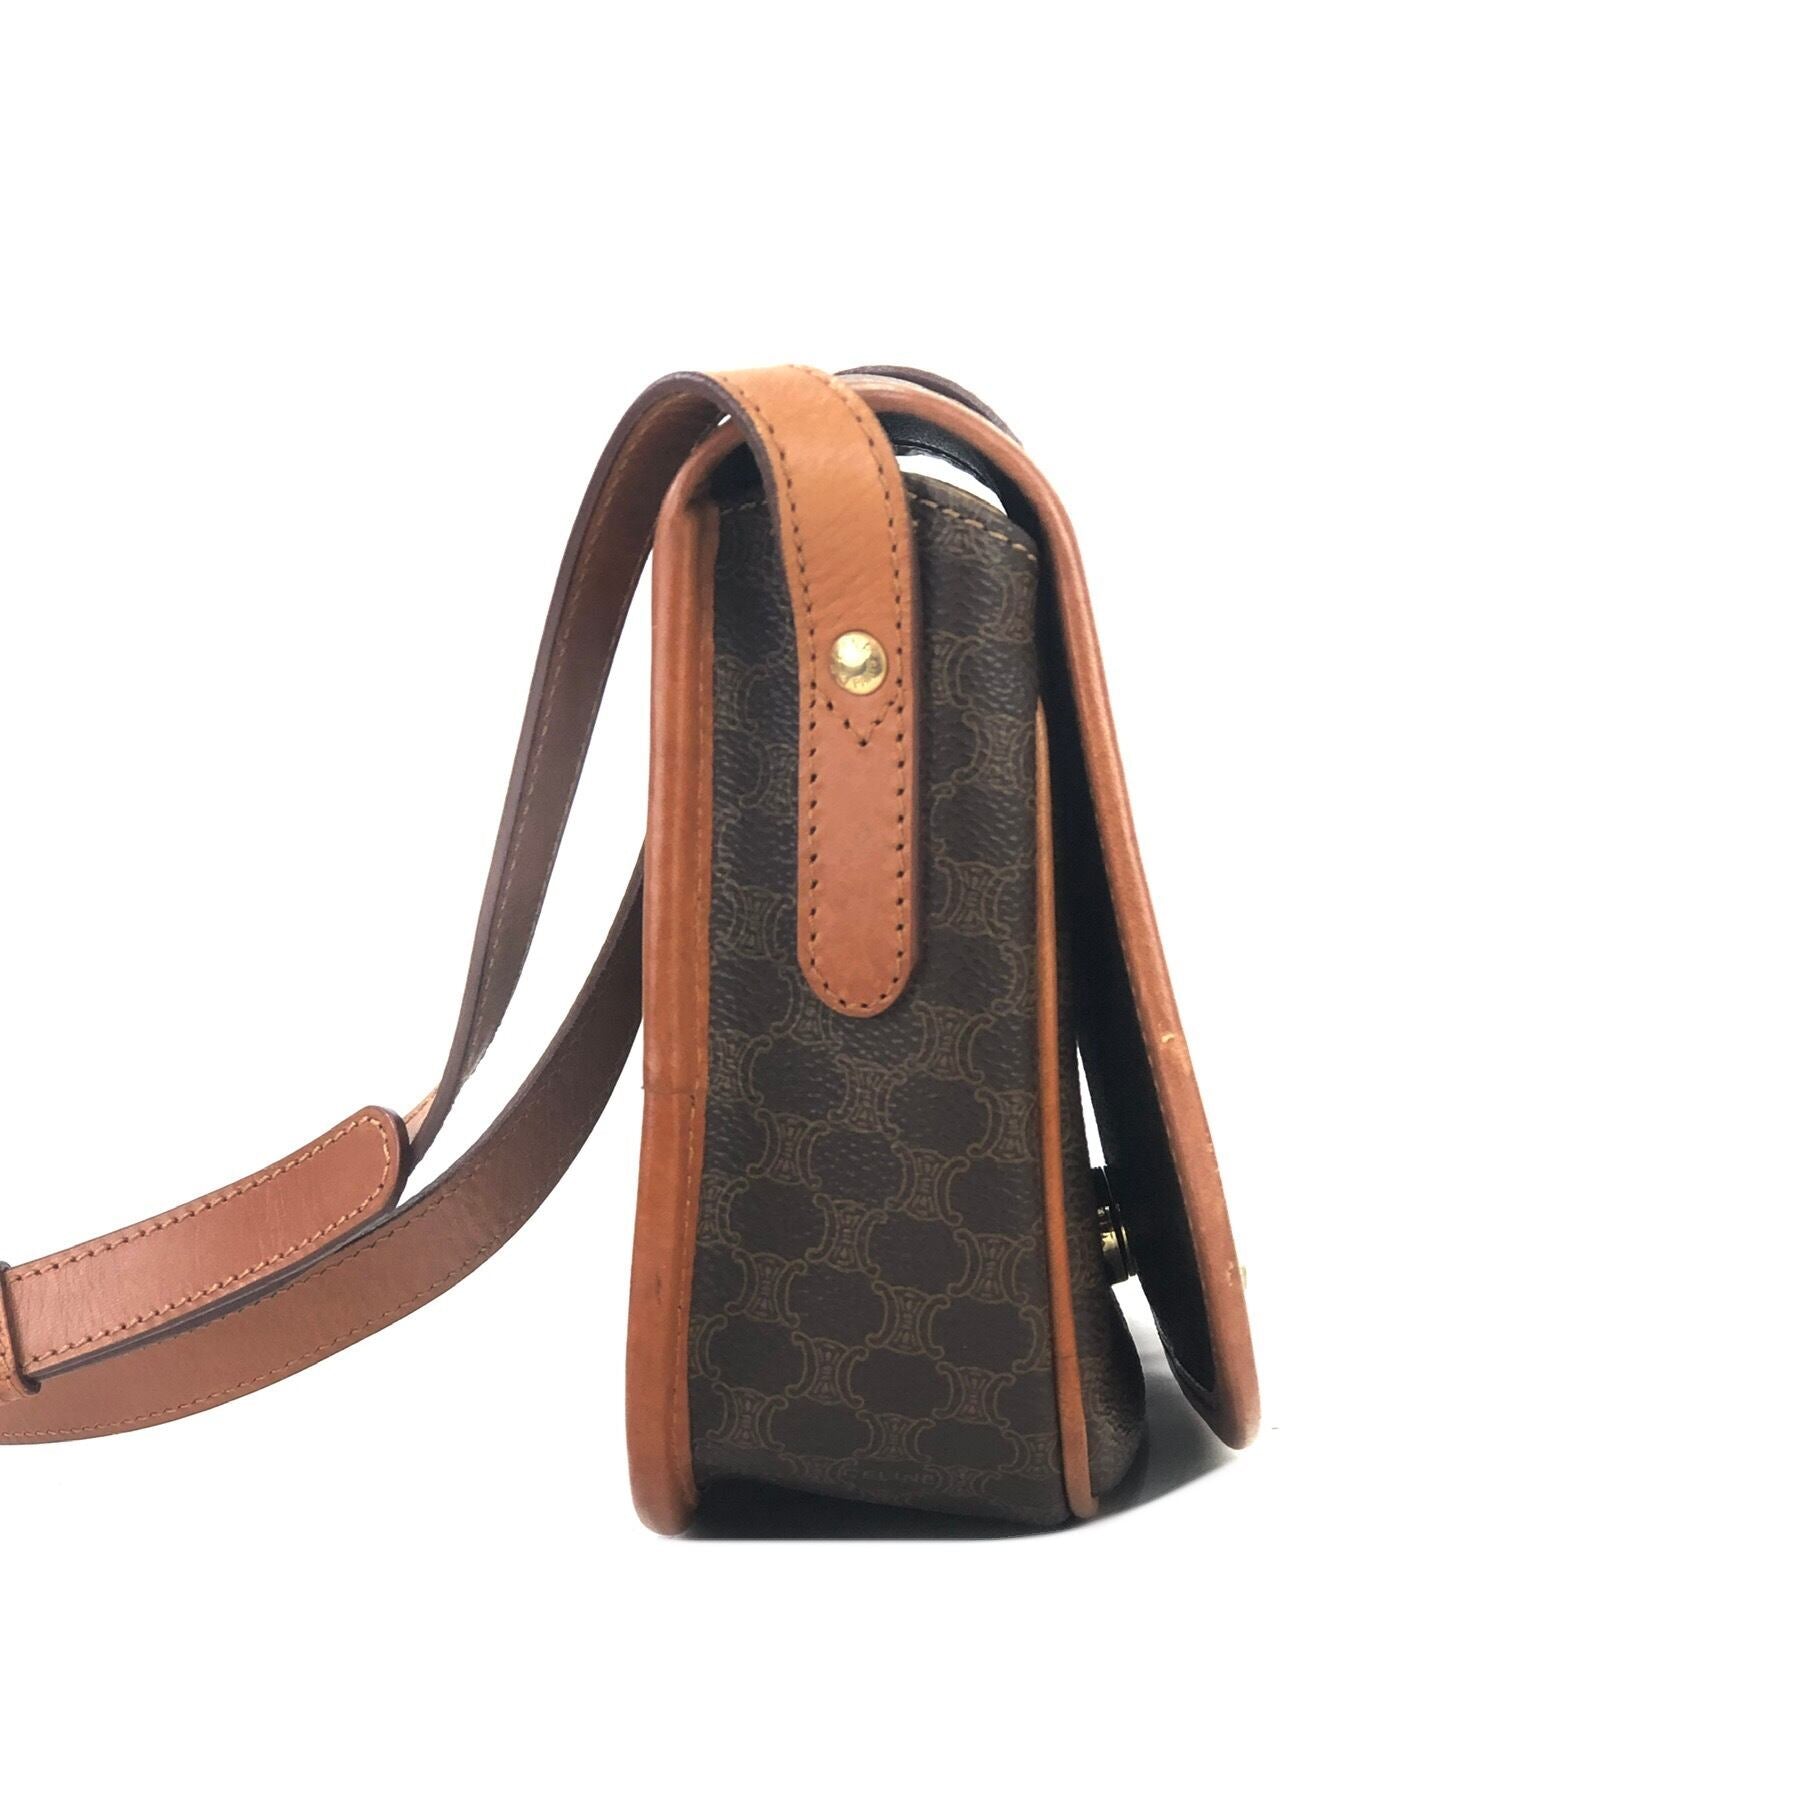 Hermès - Orange Leather Sac Trim II 35 Hobo Shoulder Bag - Catawiki